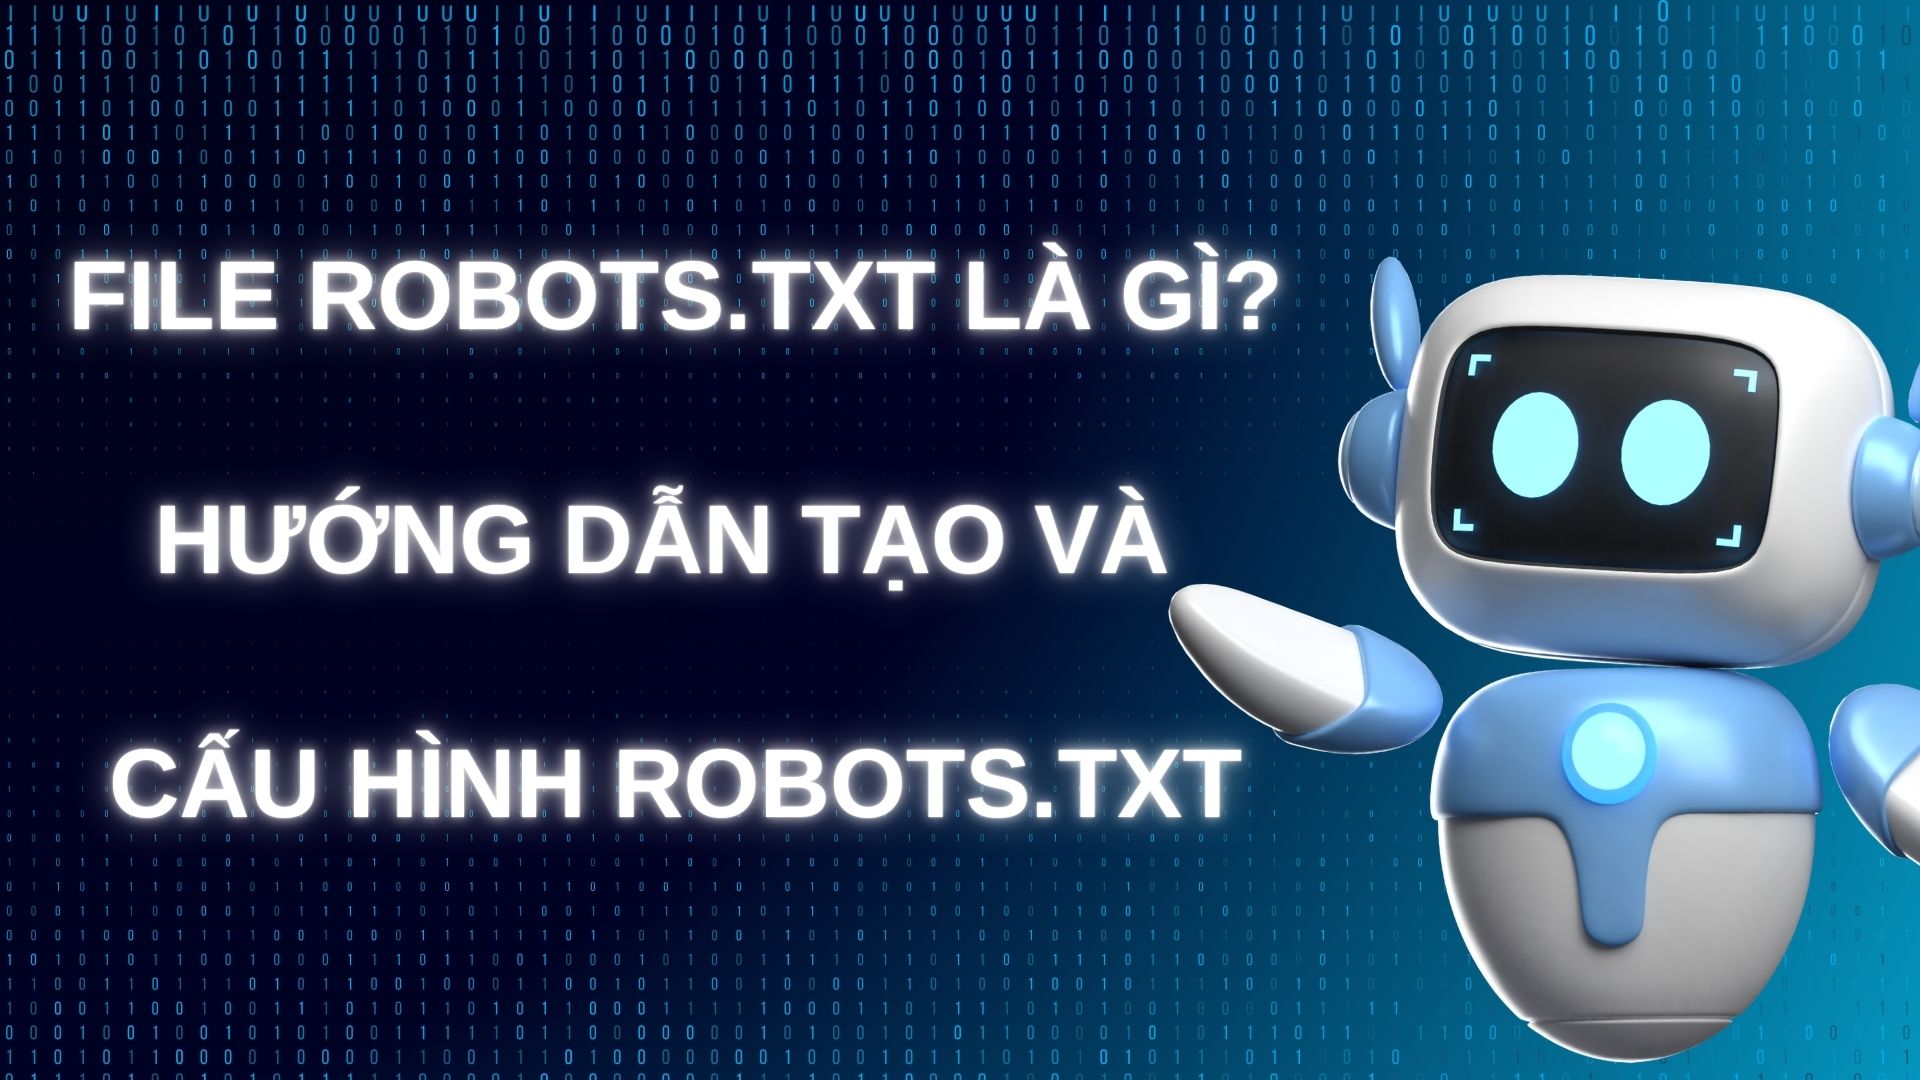 File Robots.txt là gì? Hướng dẫn tạo và cấu hình Robots.txt